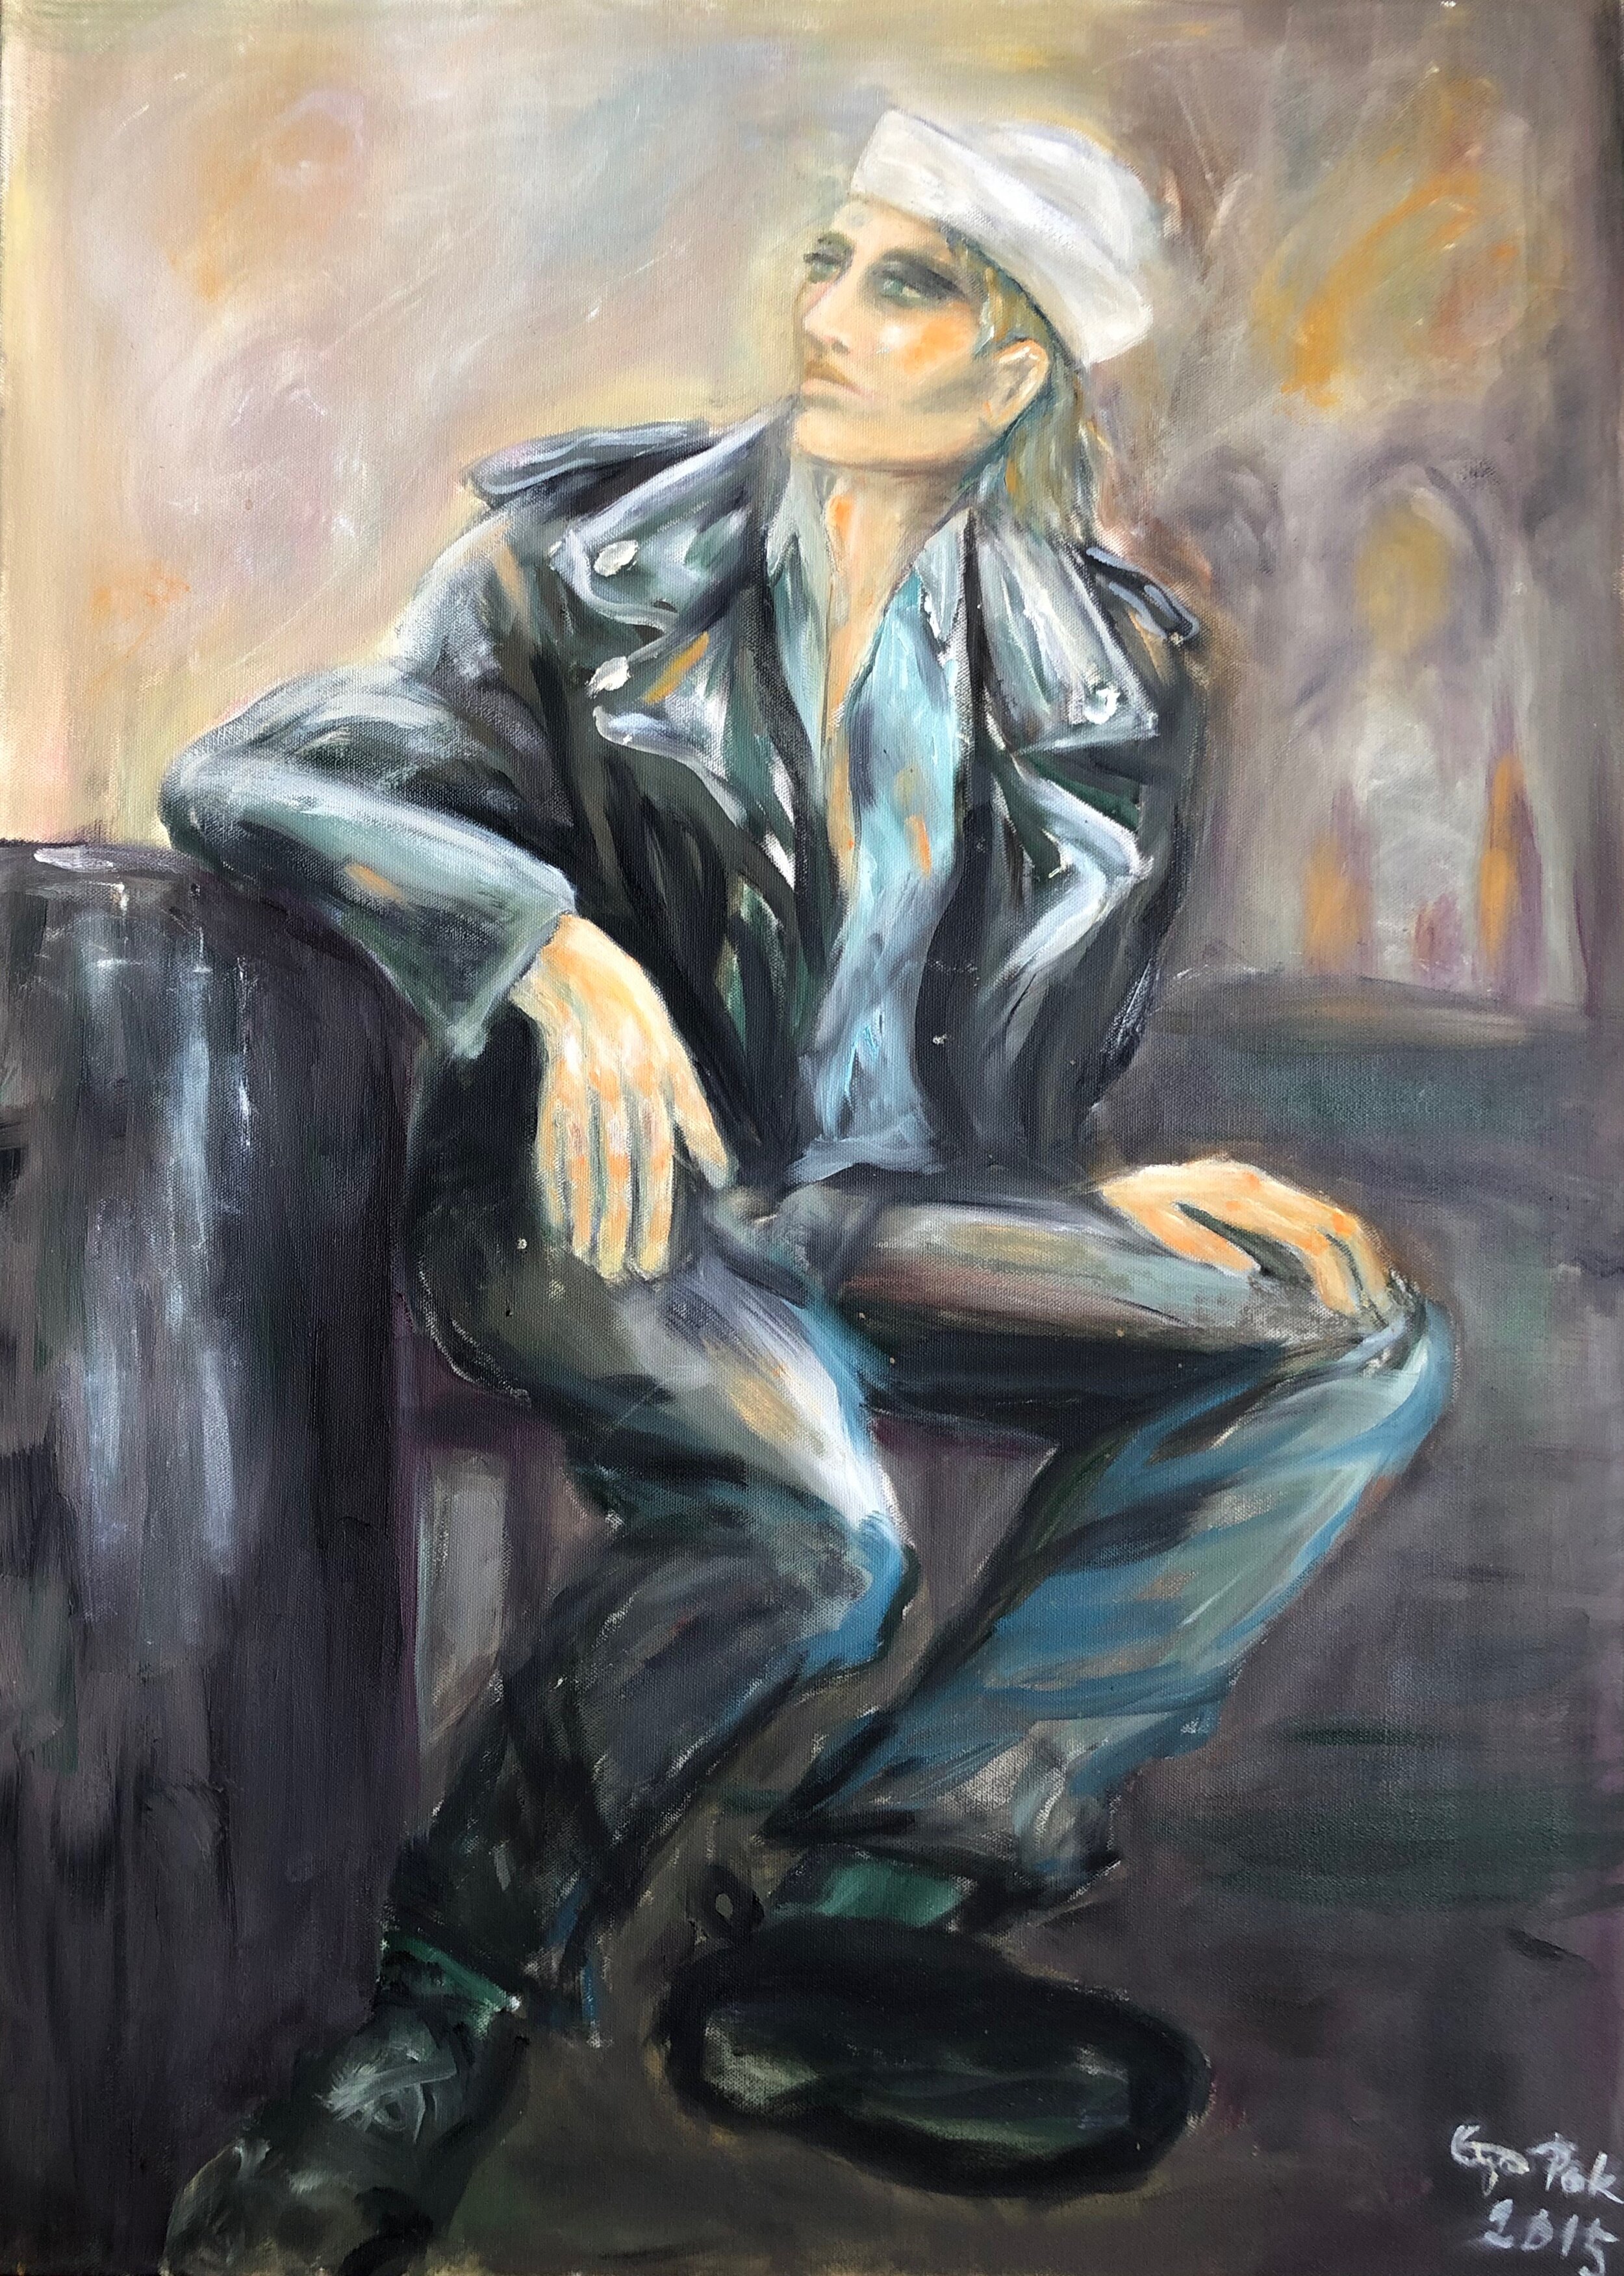  POET, 2015, oil on canvas, 90x65cm 